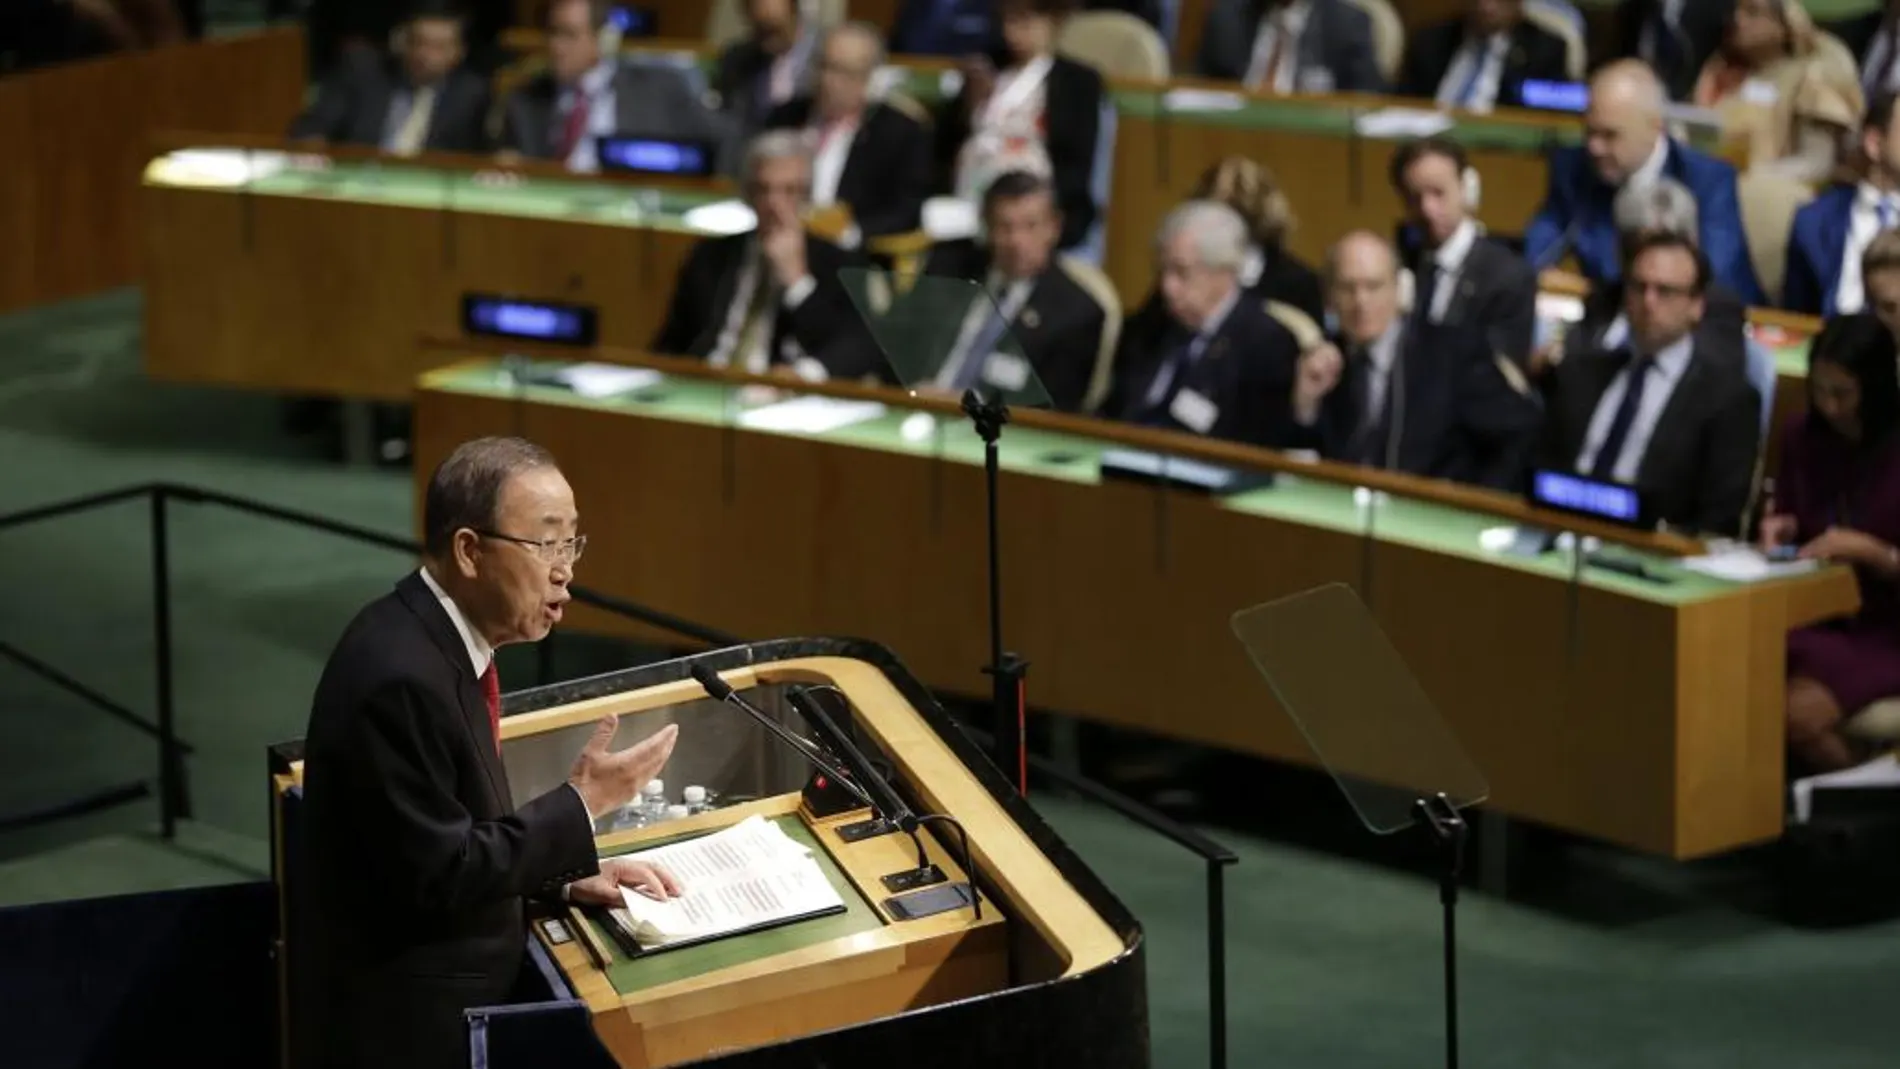 El secretario general de la ONU, Ban Ki-moon habla en la Asamblea de la ONU